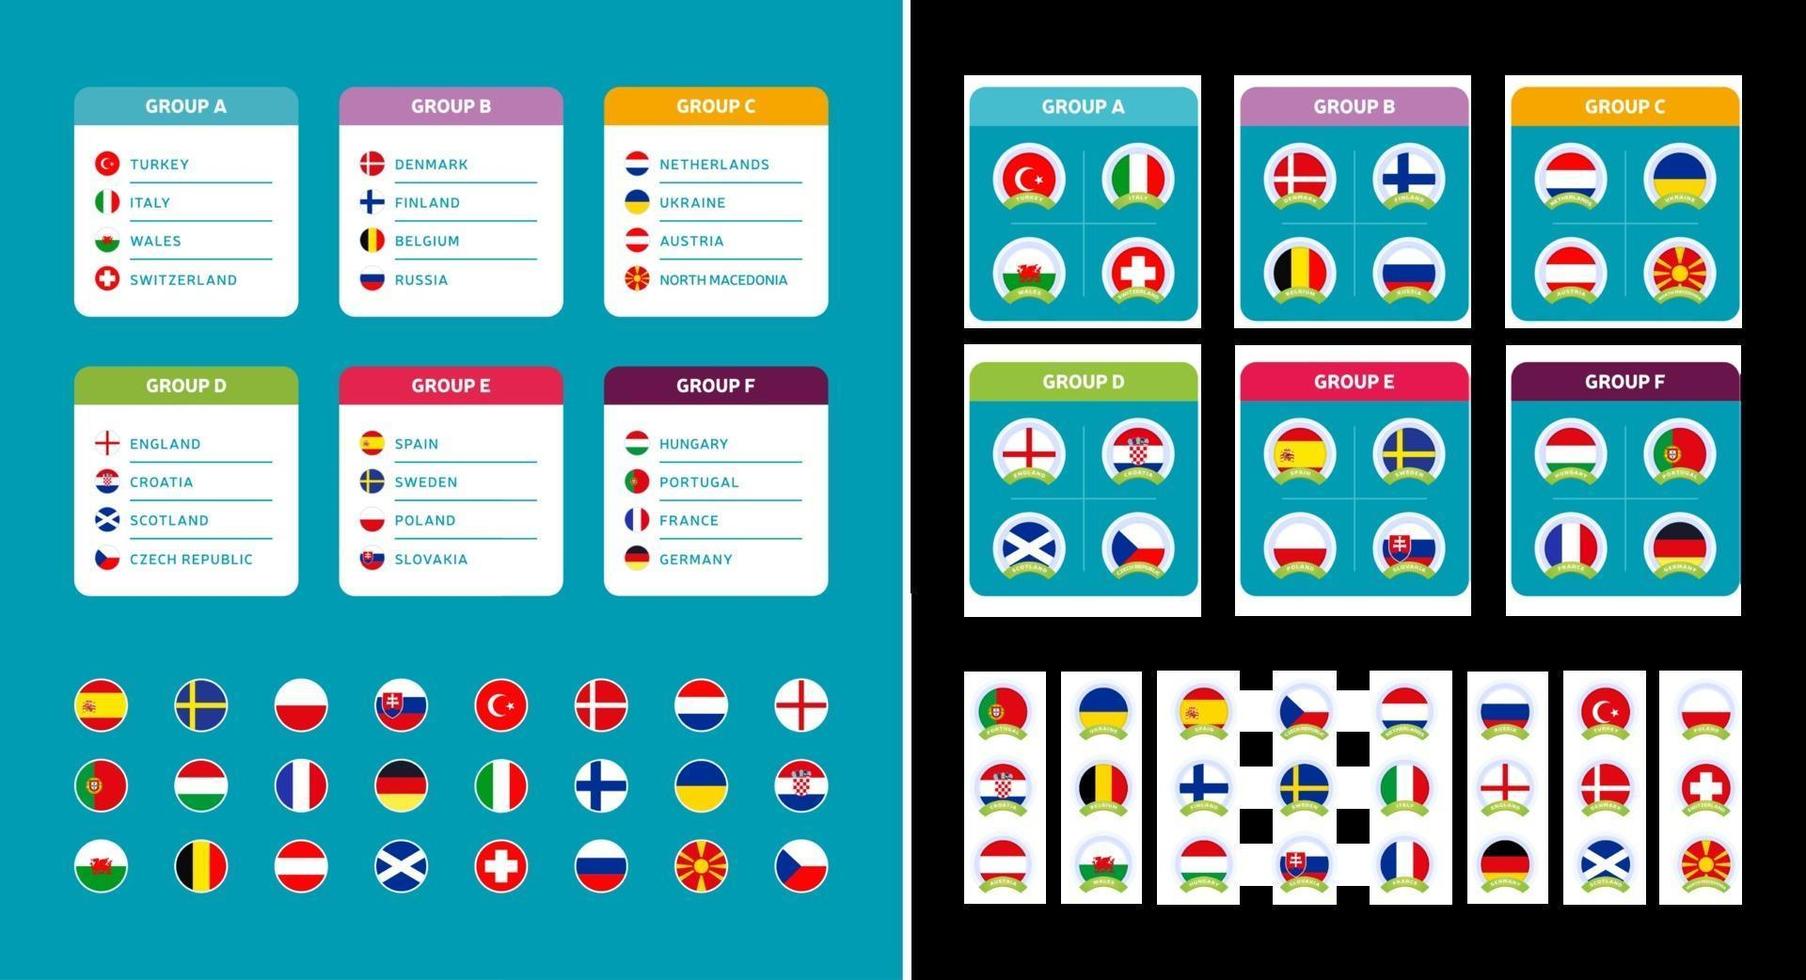 groupe de football européen mis drapeaux de pays de football européen 2020 et groupes d'équipe sur jeu de vecteurs de fond de tournoi vecteur